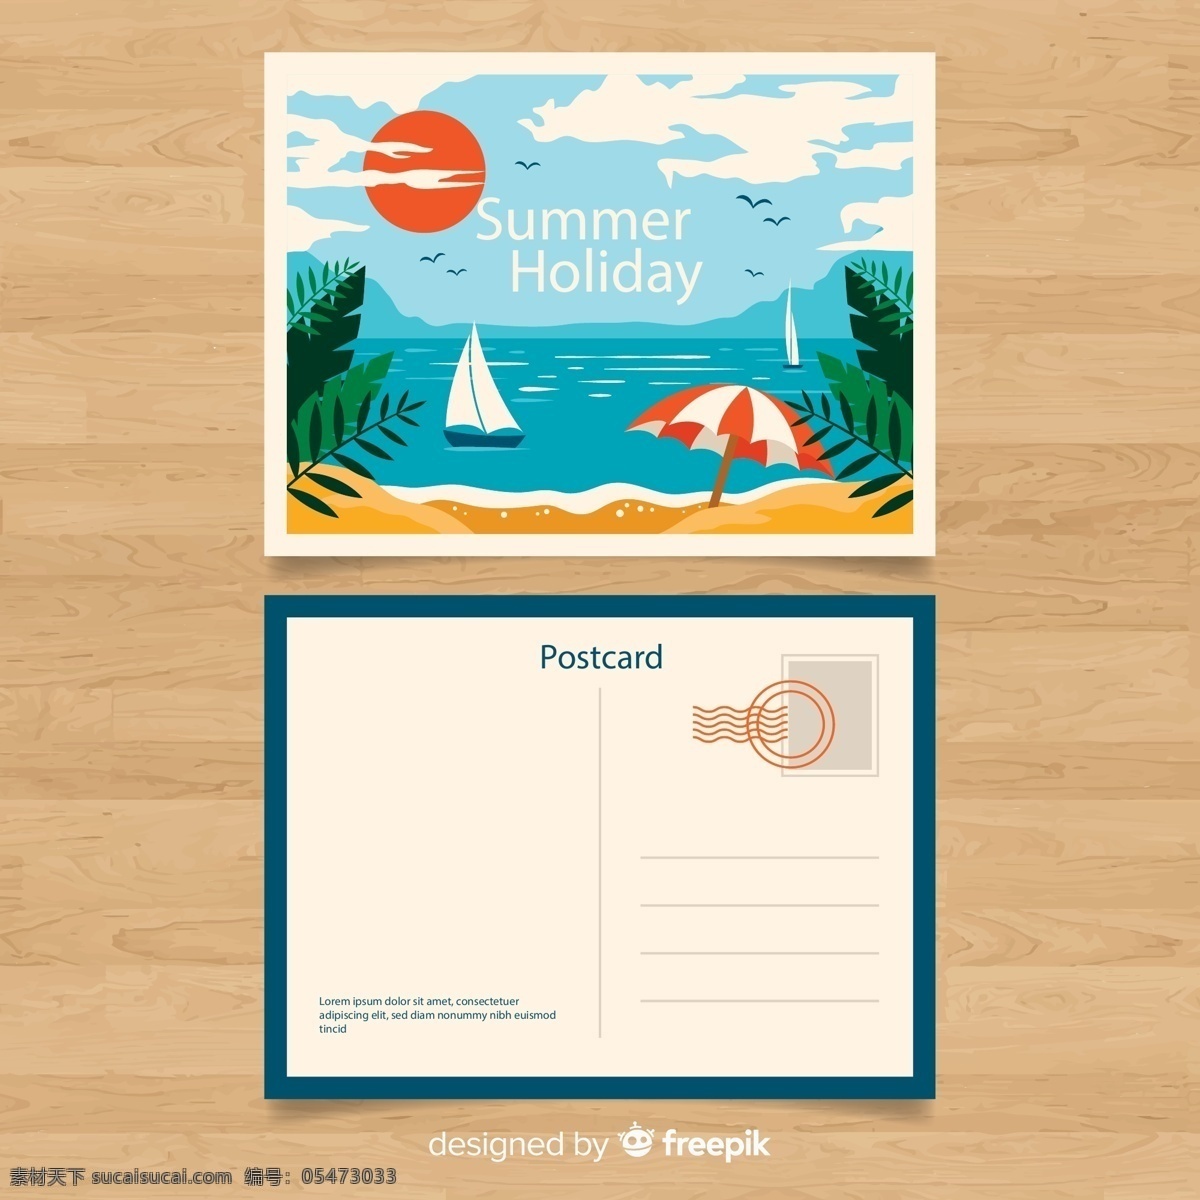 夏季 沙滩 明信片 太阳 云朵 棕榈树 遮阳伞 帆船 大海 矢量 高清图片